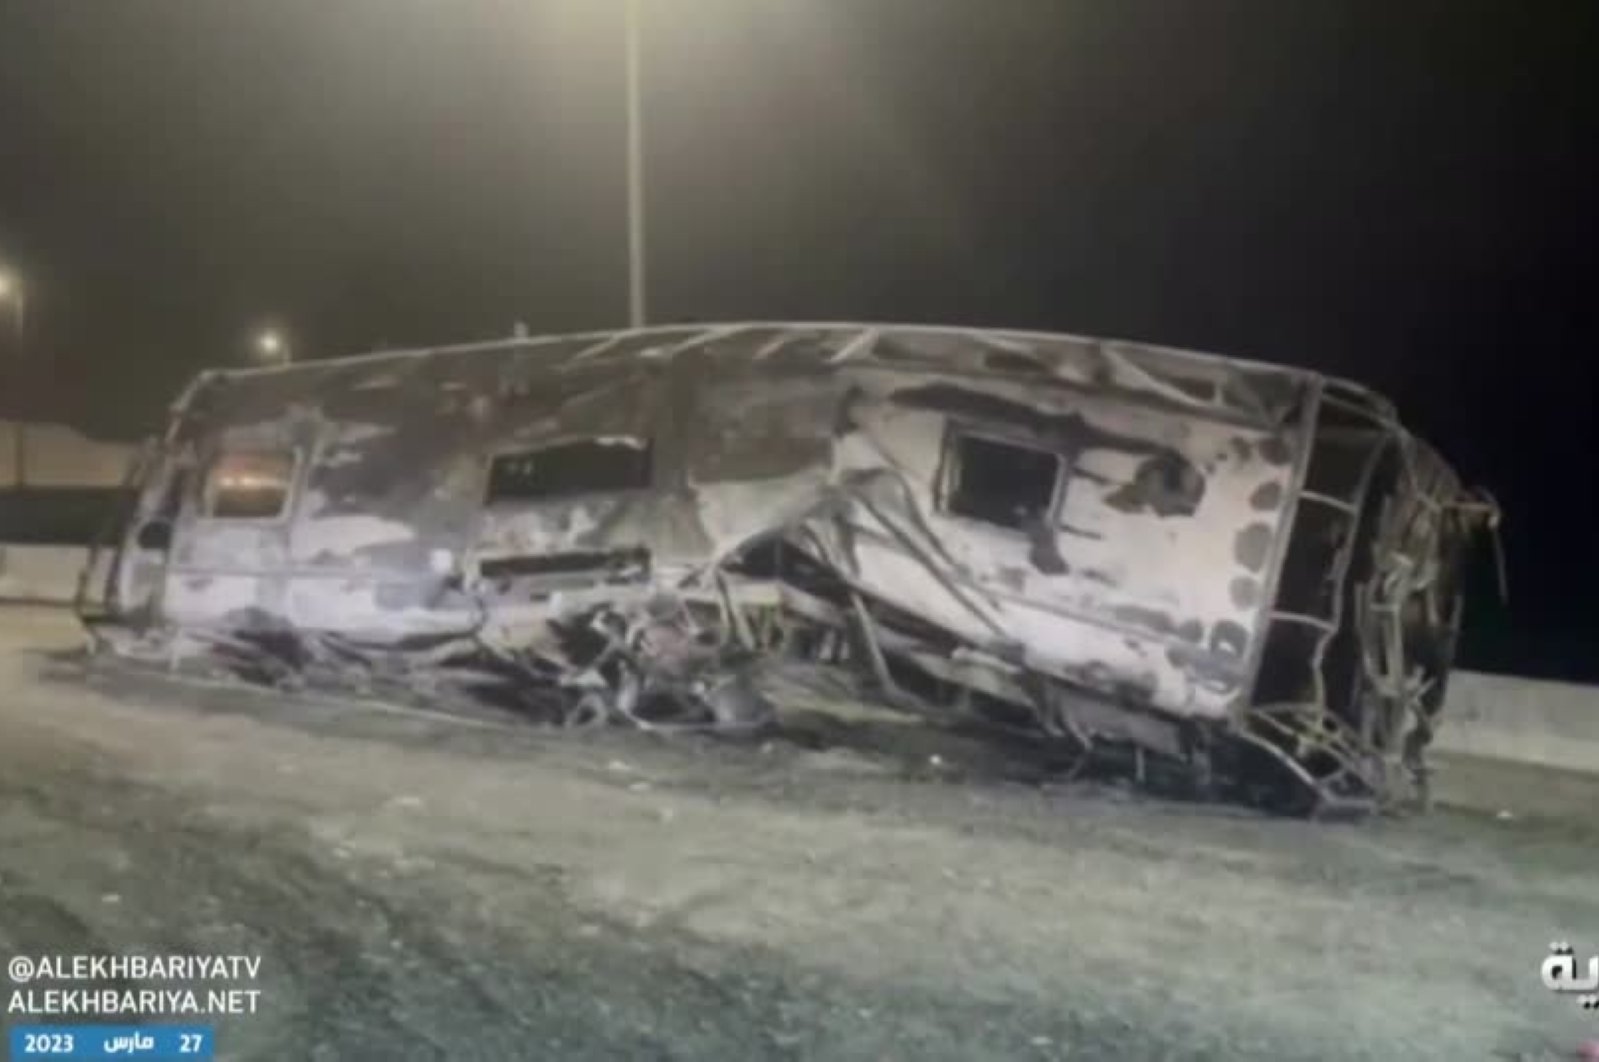 Sedikitnya 20 tewas setelah bus jemaah haji jatuh di Arab Saudi